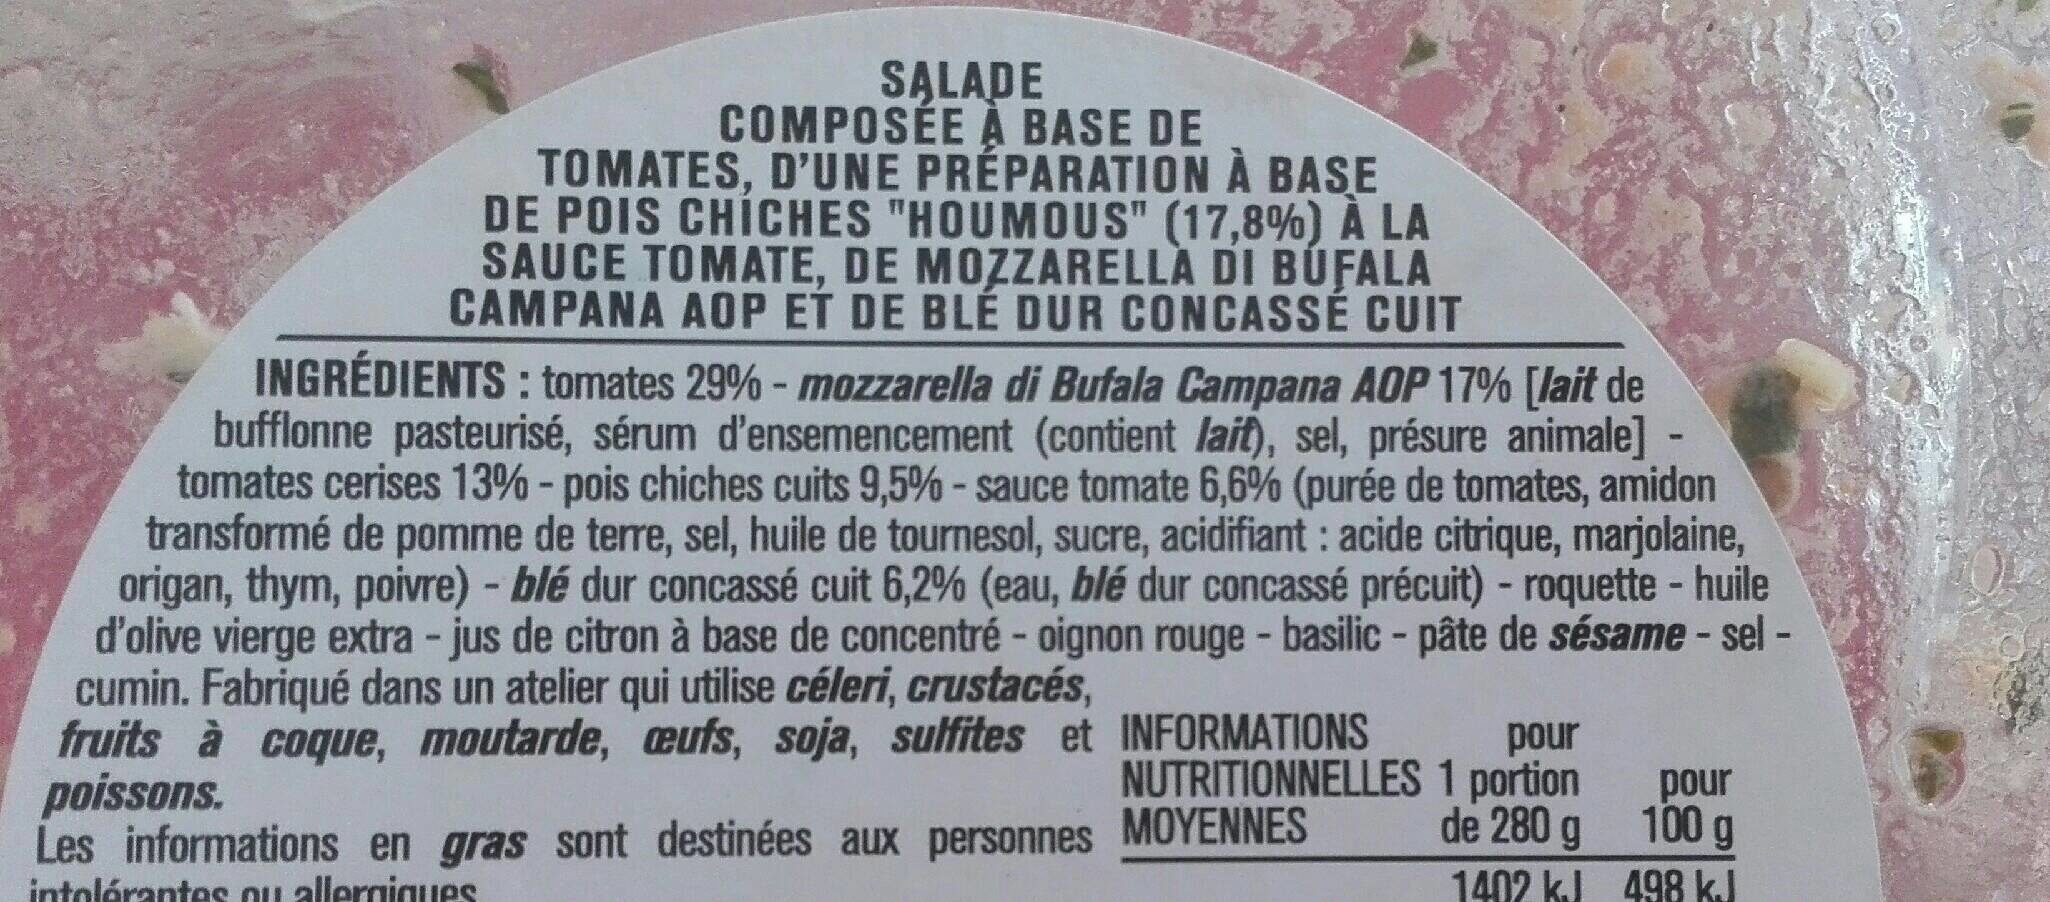 Salade trio de tomates - Ingredients - fr